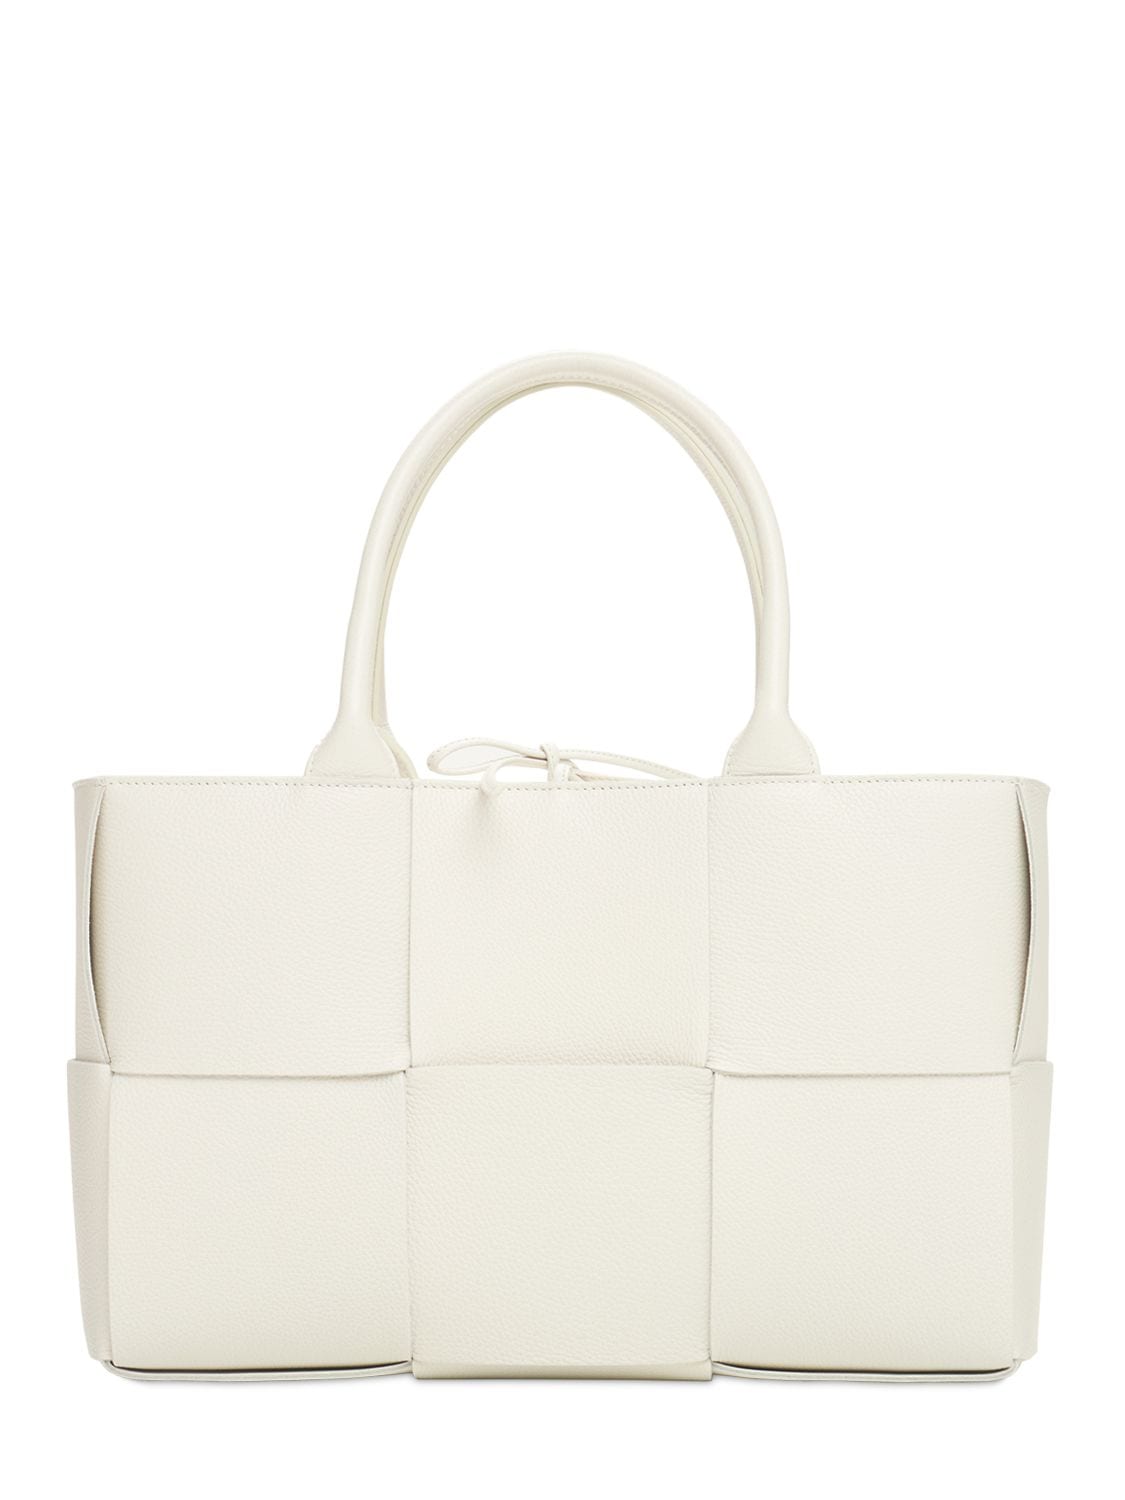 Bottega Veneta - Small arco intreccio leather tote bag - White-gold |  Luisaviaroma